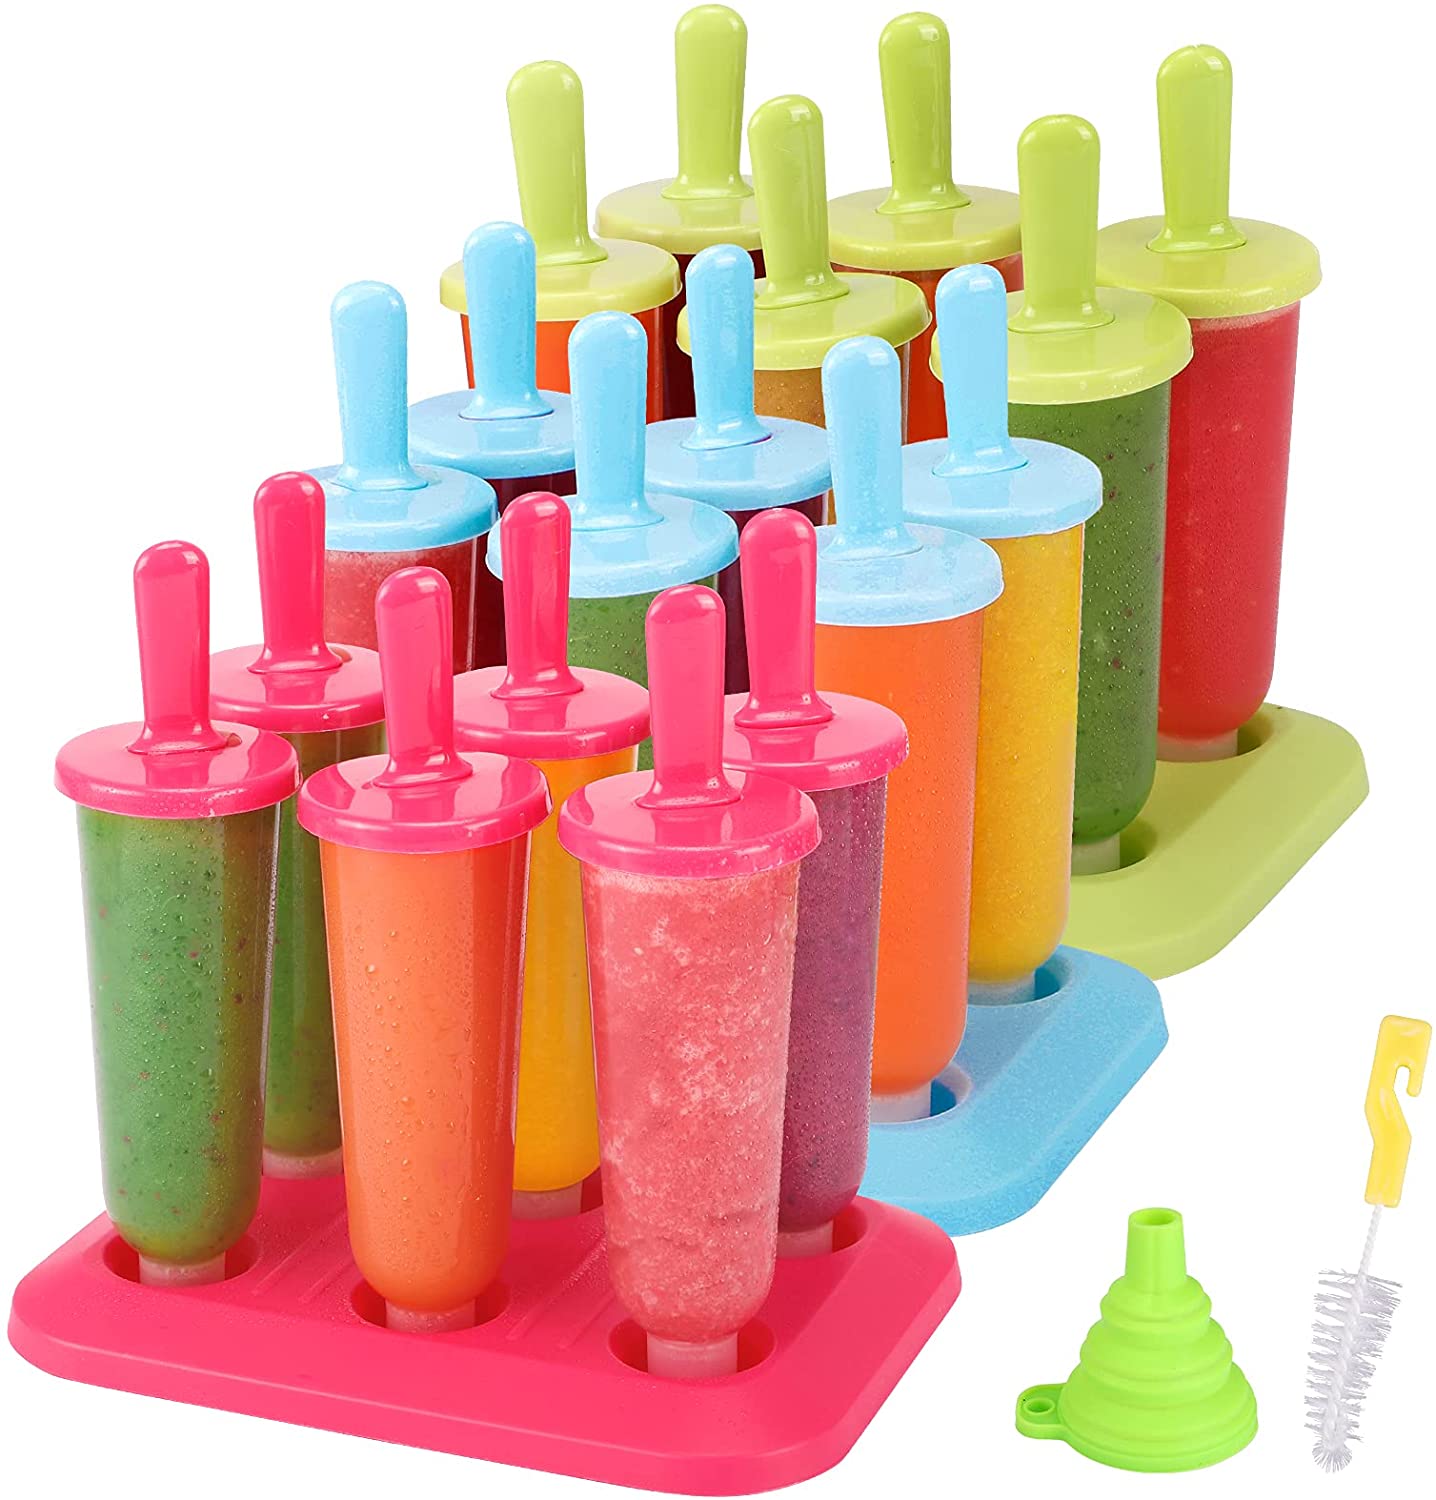 BAKHUK BPA-Free Plastic Ice Pop Maker Molds, 3-Pack